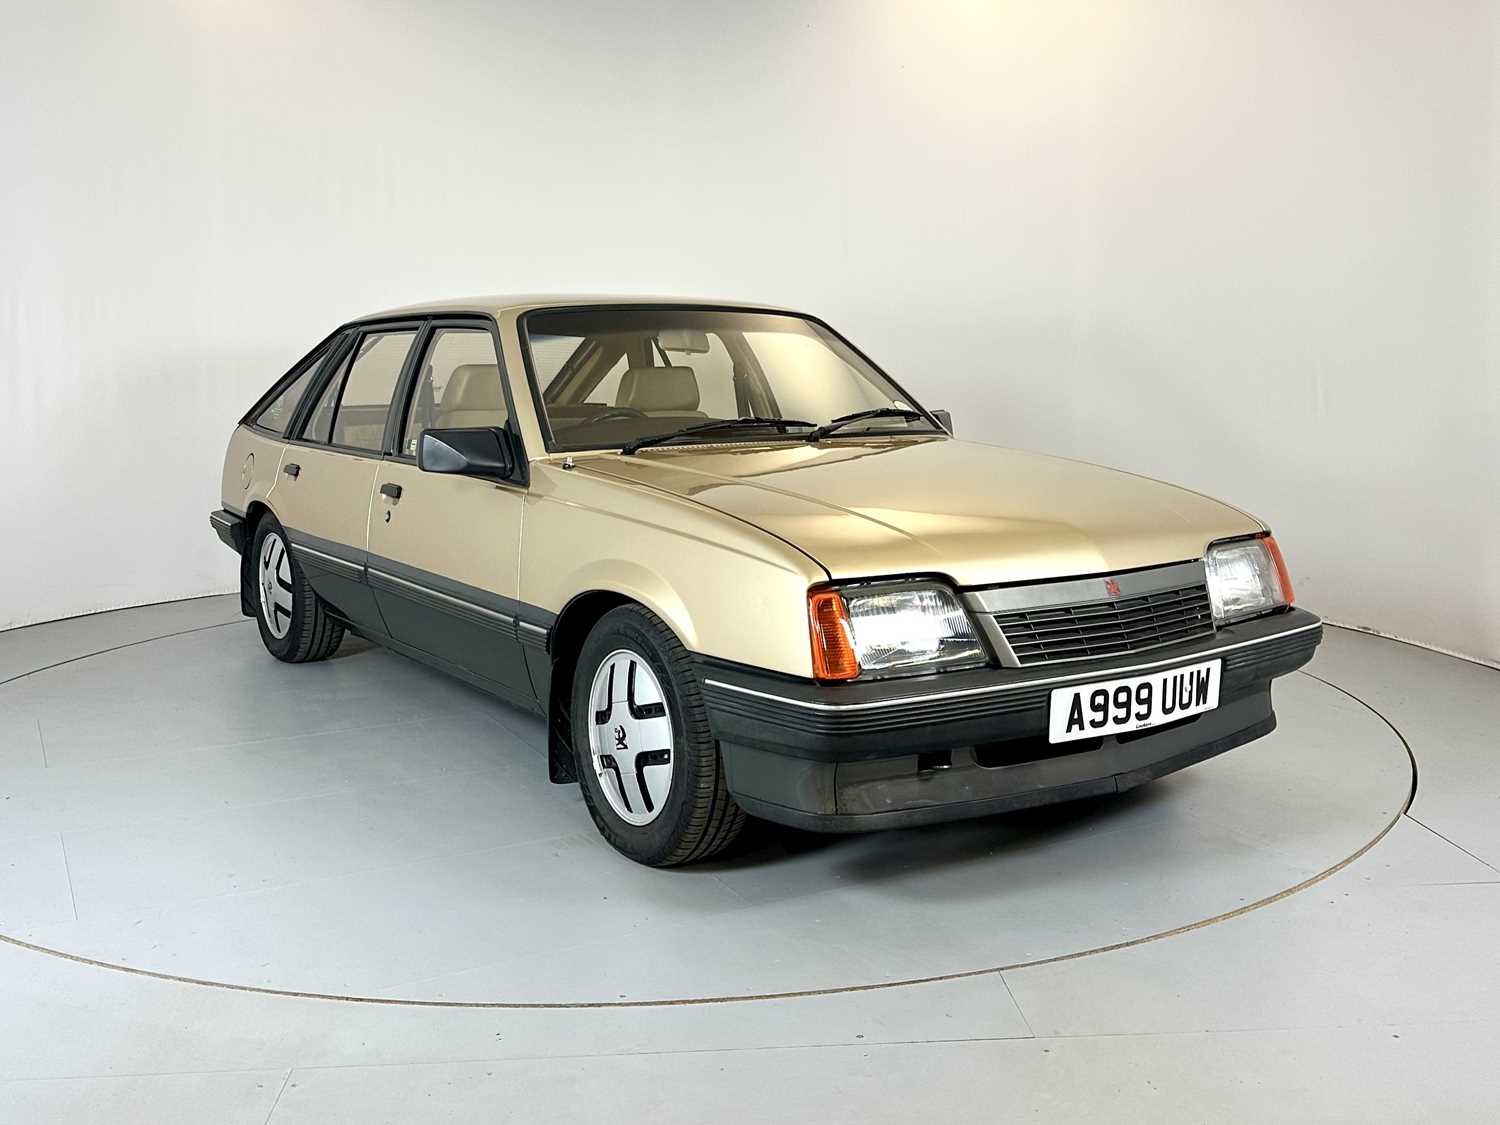 Lot 100 - 1984 Vauxhall Cavalier SRI